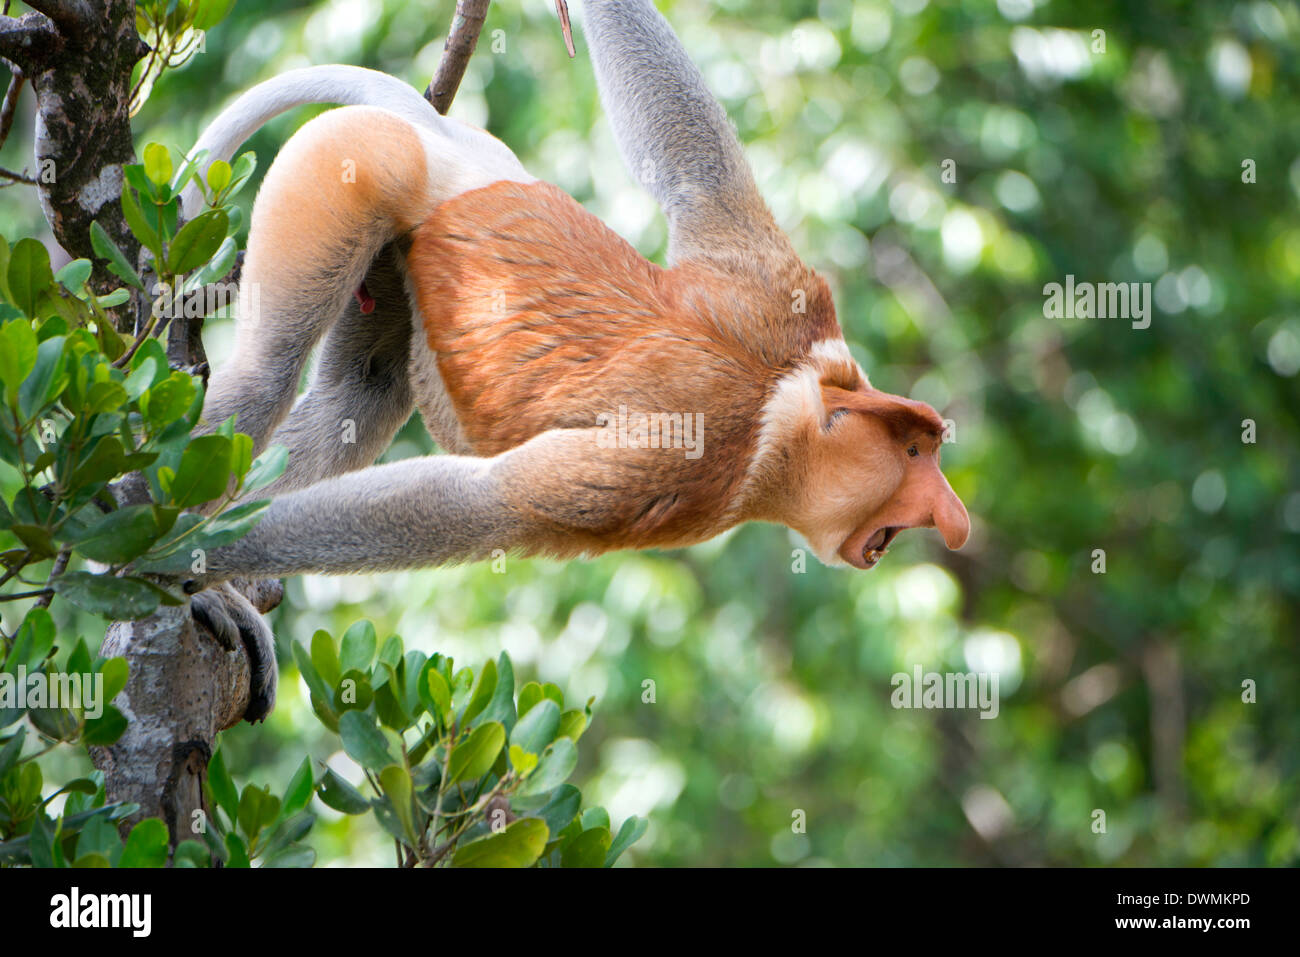 Mâle dominant proboscis monkey (Nasalis larvatus), Labuk Bay Proboscis Monkey Sanctuary, Sabah, Bornéo, Malaisie Banque D'Images